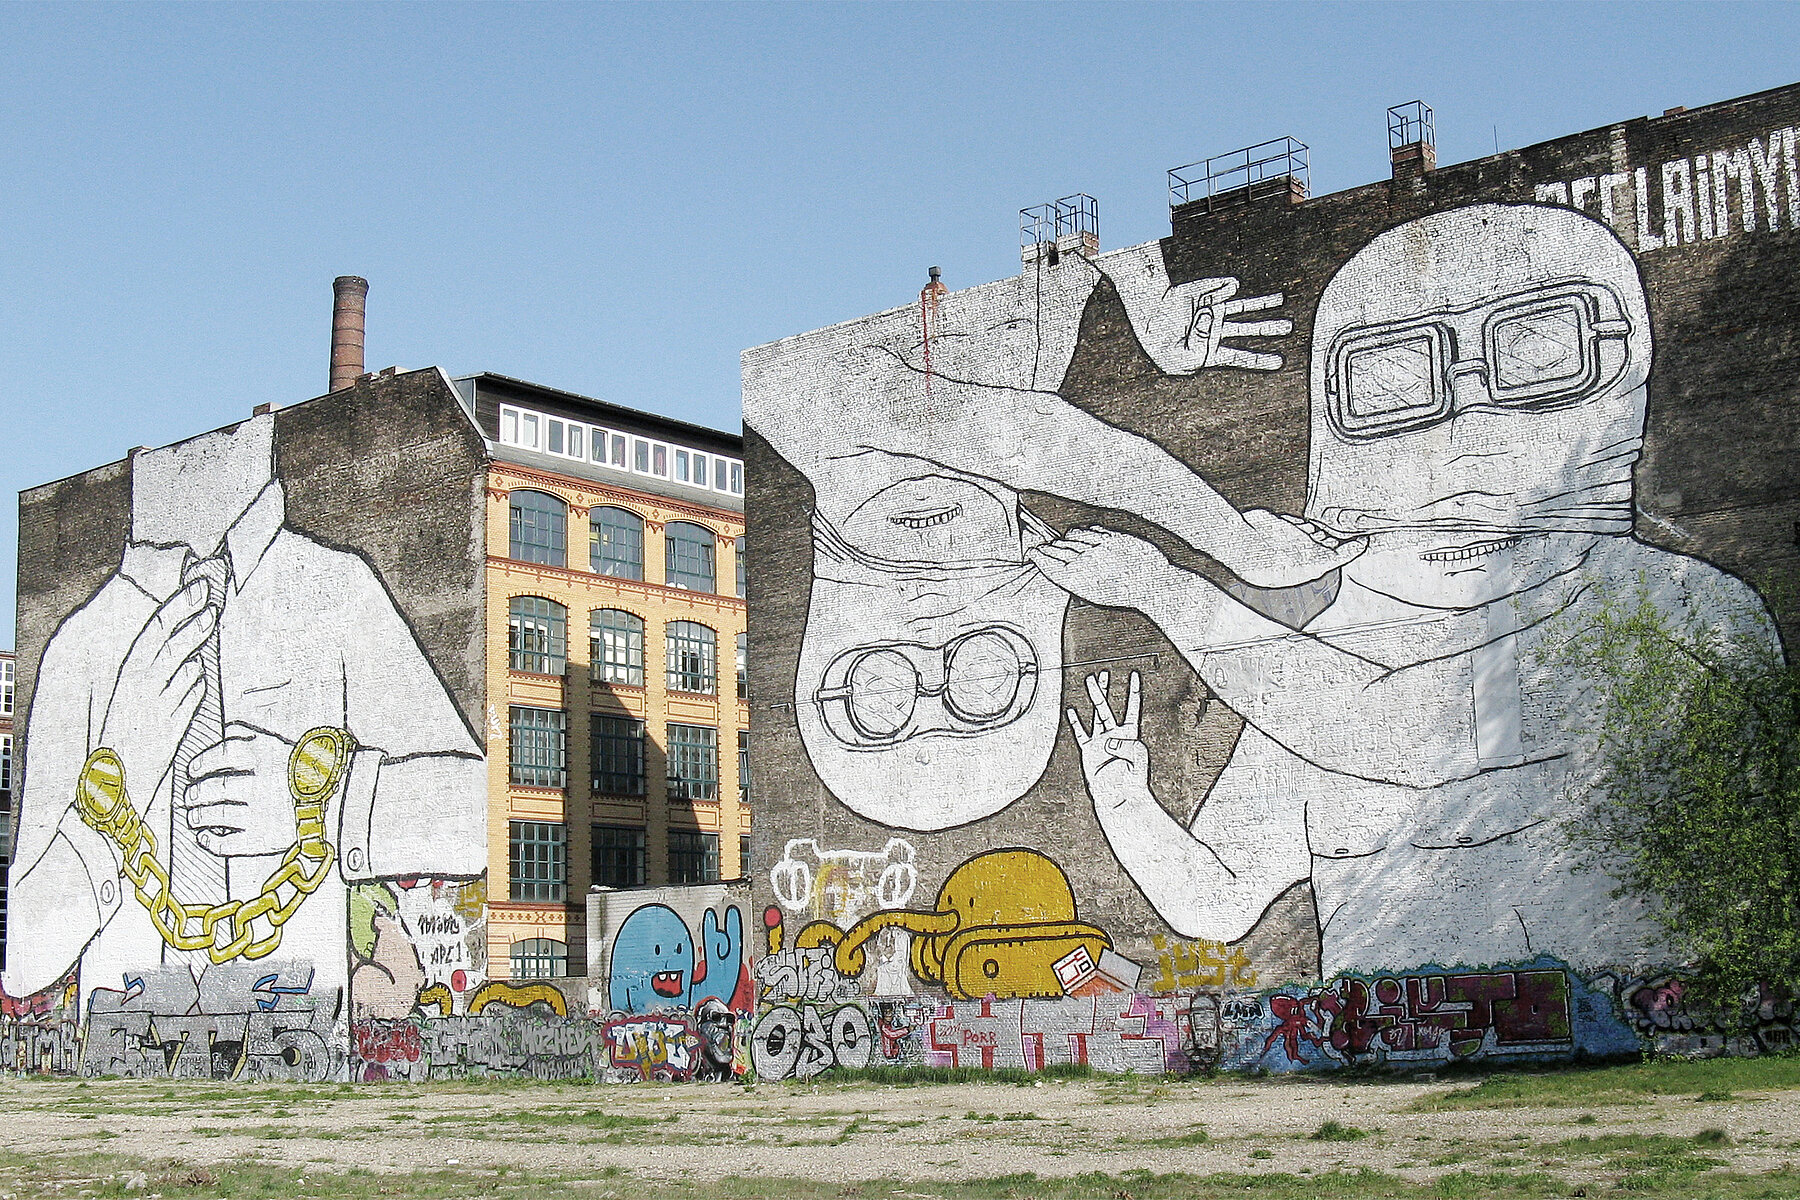 Zwei Graffitis auf Hauswänden an der Cuvry-Brache. Auf dem linken Haus befindet sich ein kopfloser Mann, der an beiden Handgelenken goldene Uhren trägt, die durch eine Kette miteinander verbunden sind. Auf der rechten Wand sind zwei maskierte Figure mit Taucherbrillen dargestellt, die linke Figur steht auf dem Kopf.